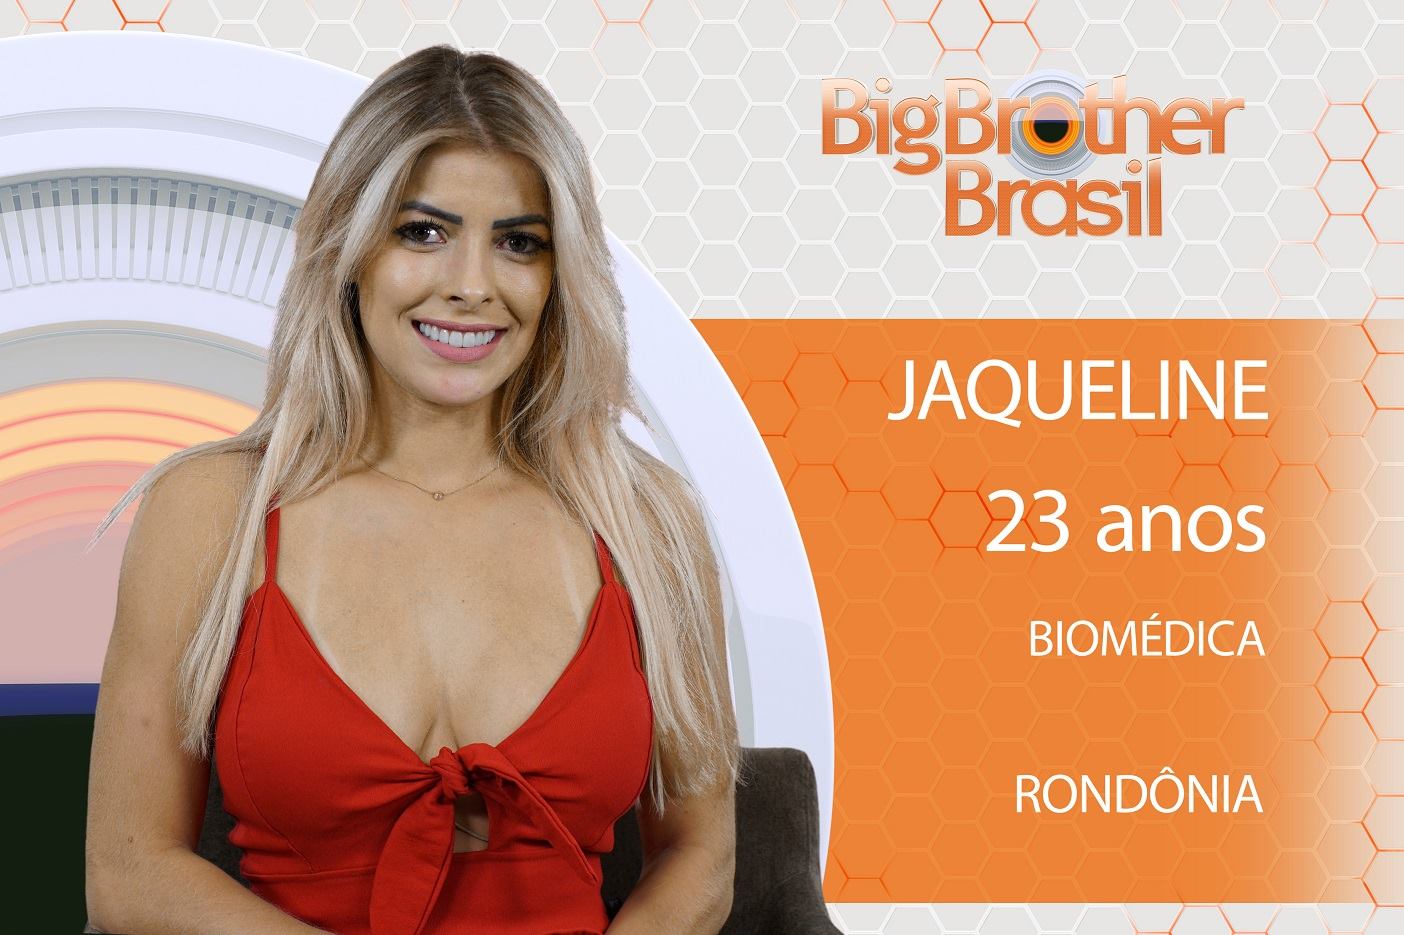 Jaqueline é Biomédica e vem de Rondônia (Divulgação)